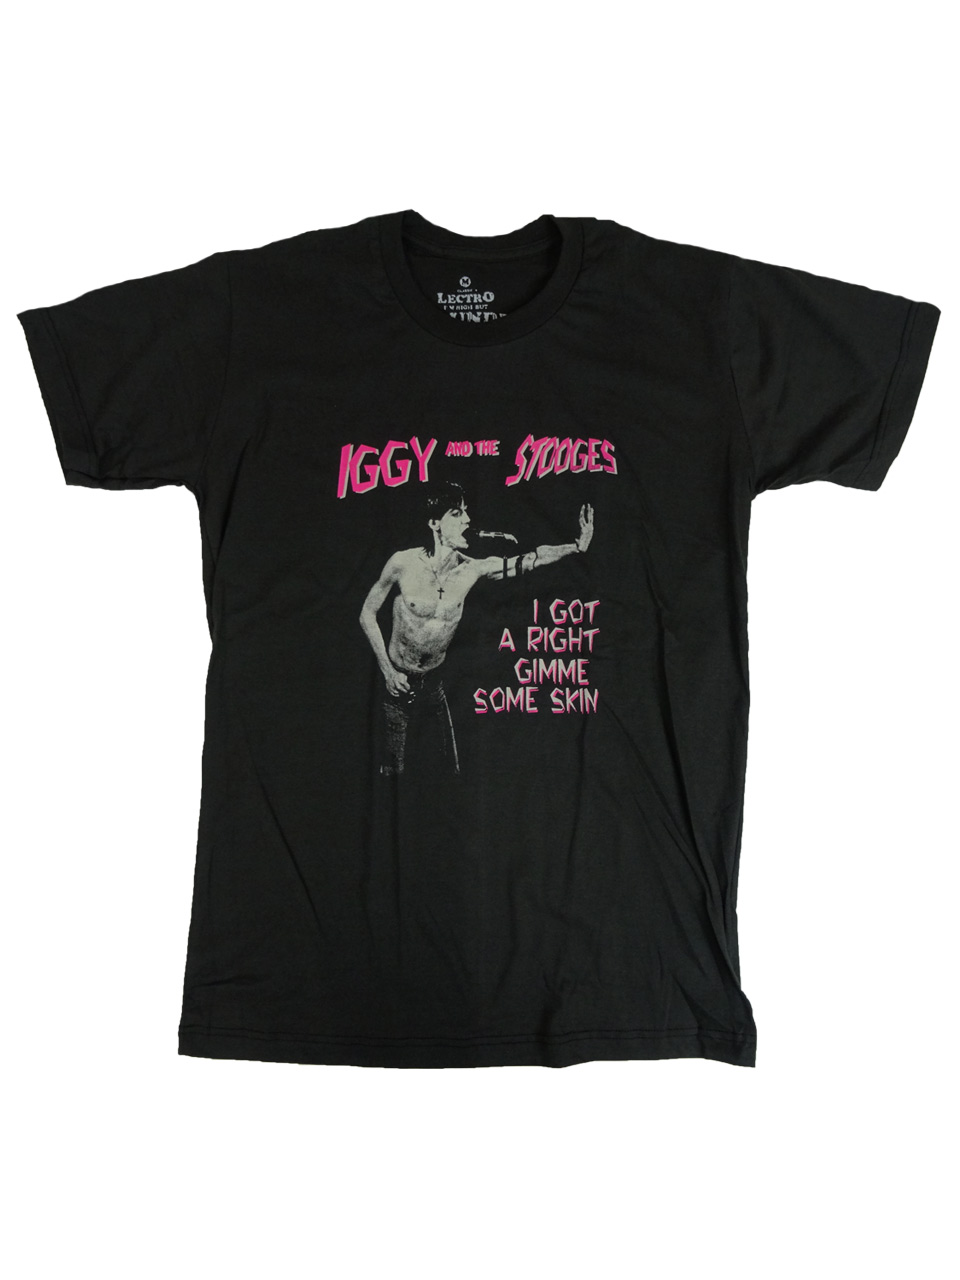 ロックTシャツ Iggy And The Stooges イギー＆ザ・ストゥージズ I Got Right Gimme Some Skin ebi-0150